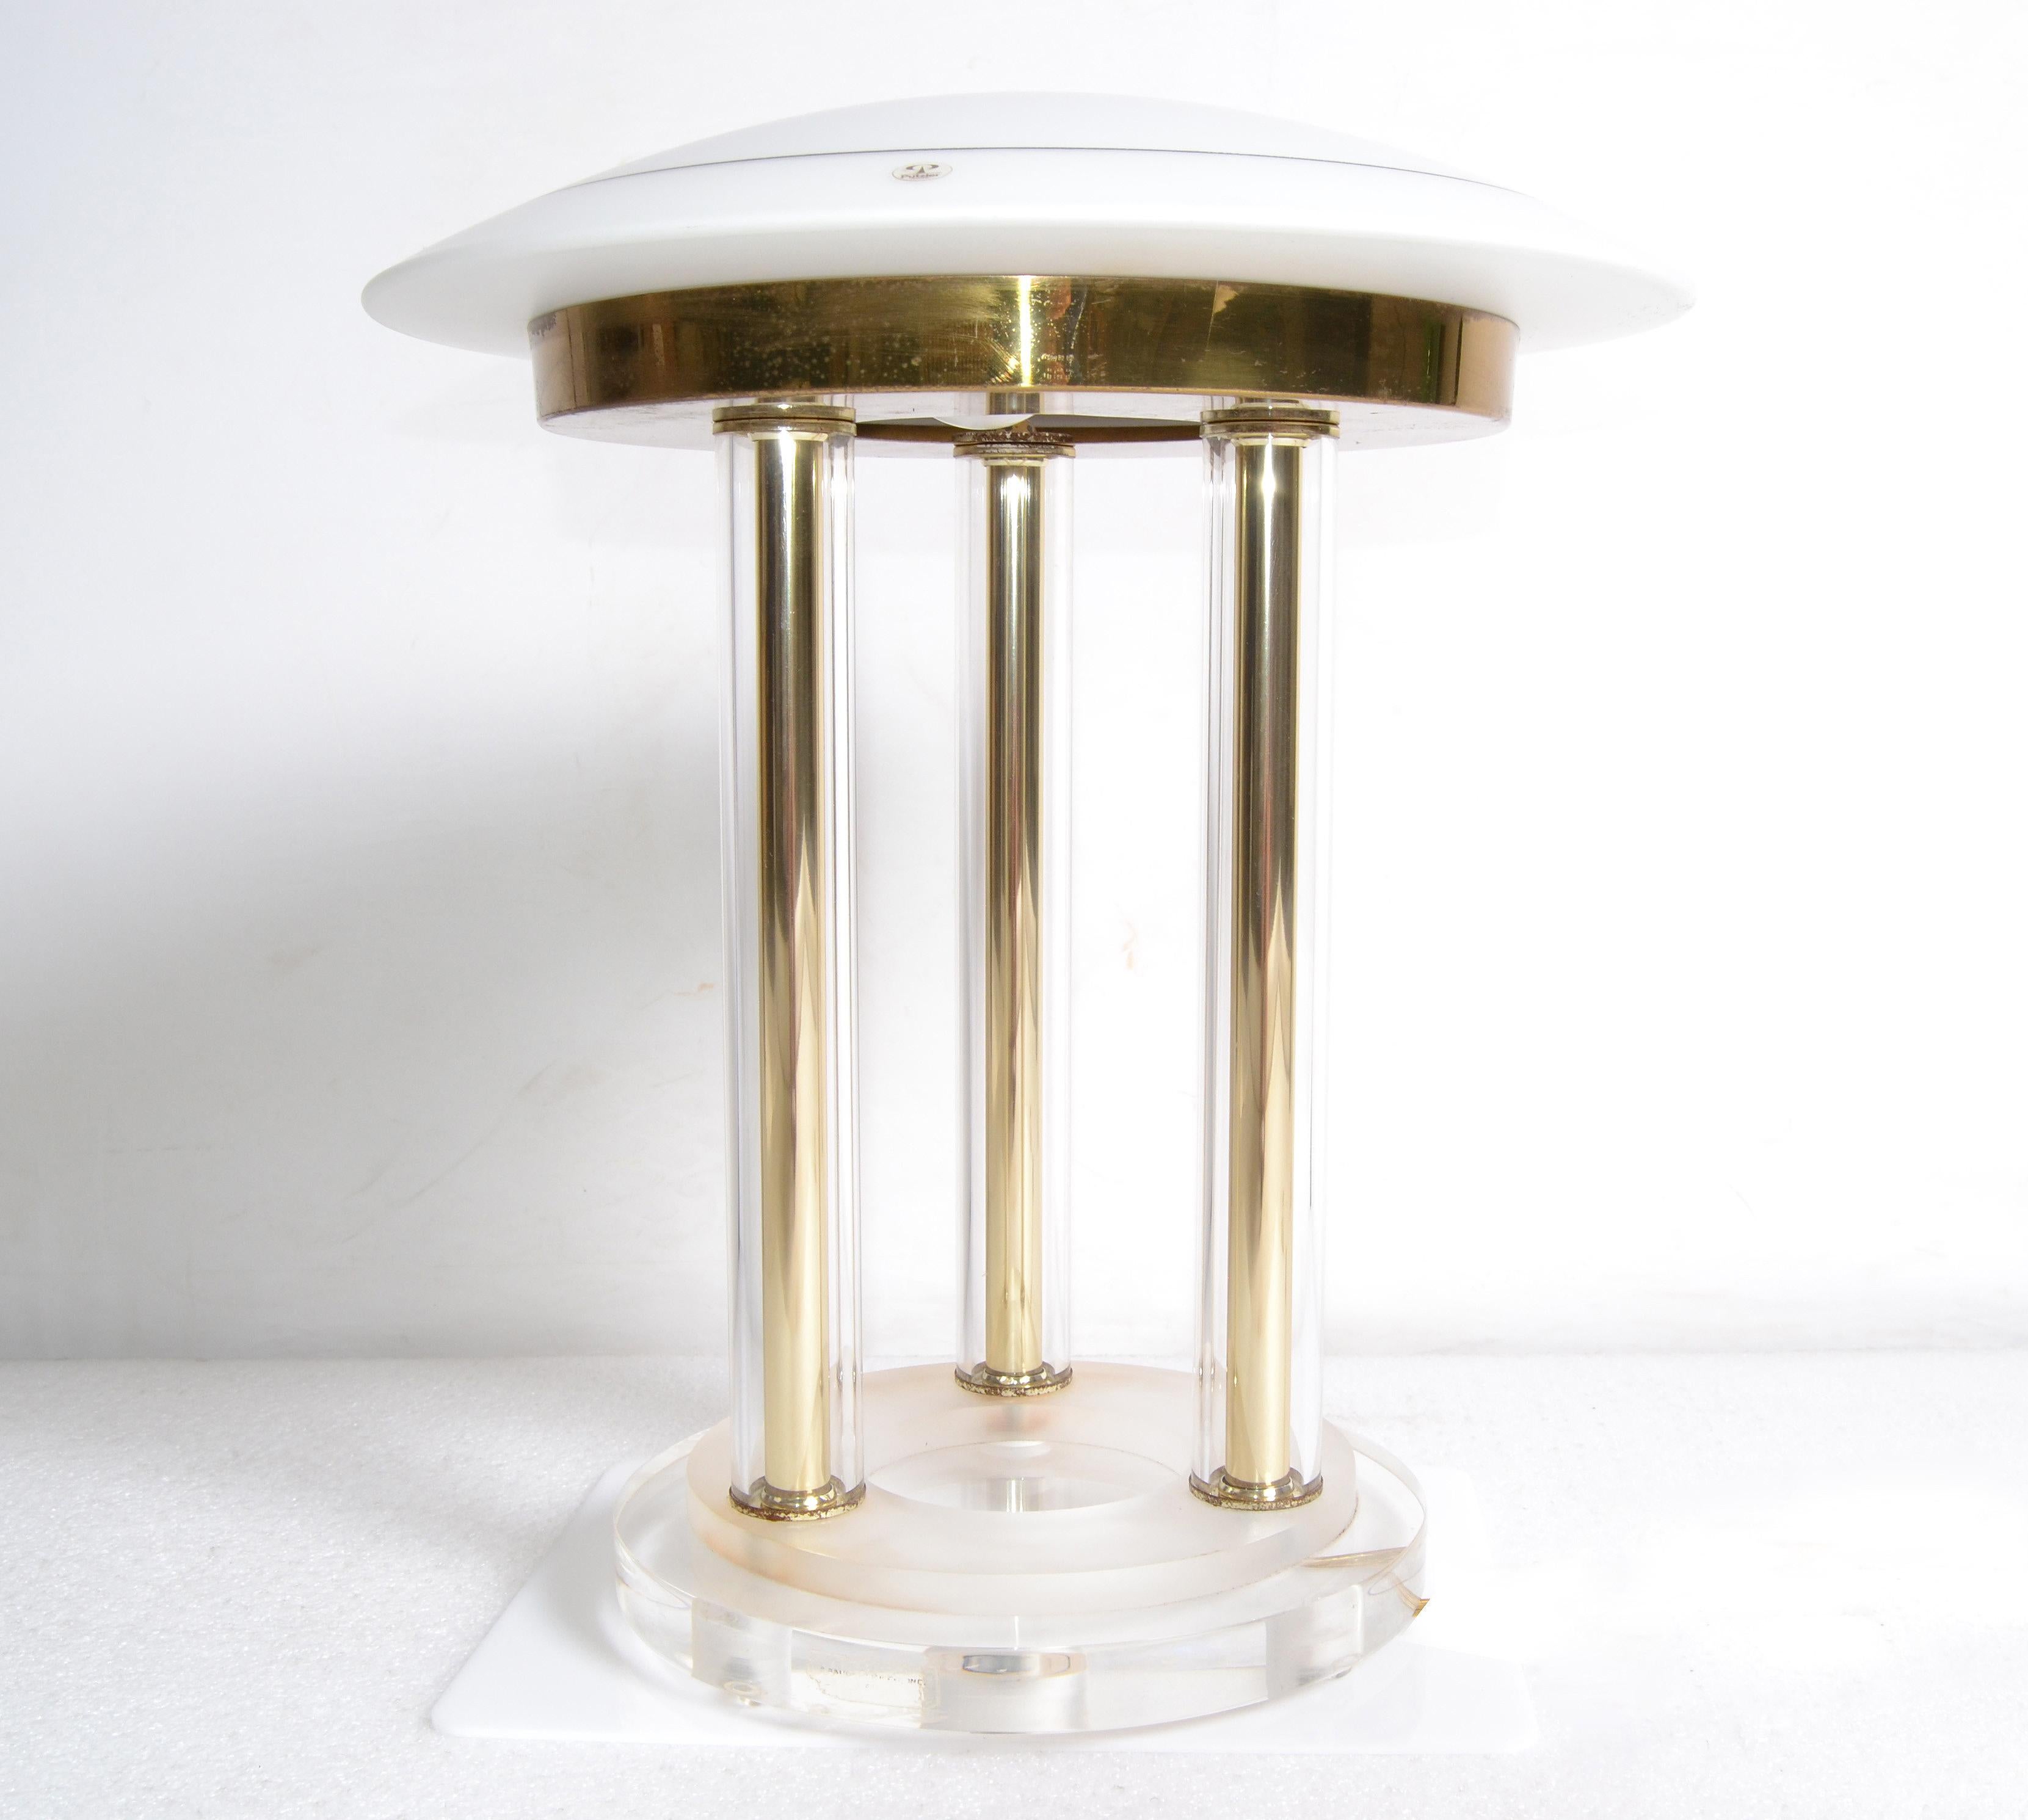 Lampe de table Space Age en laiton, Lucite et verre soufflé, datant du milieu du siècle dernier
Peill & Putzler en Allemagne.
Il possède la douille en porcelaine d'origine et peut accueillir une ampoule ordinaire de 75 watts maximum.
Marque du